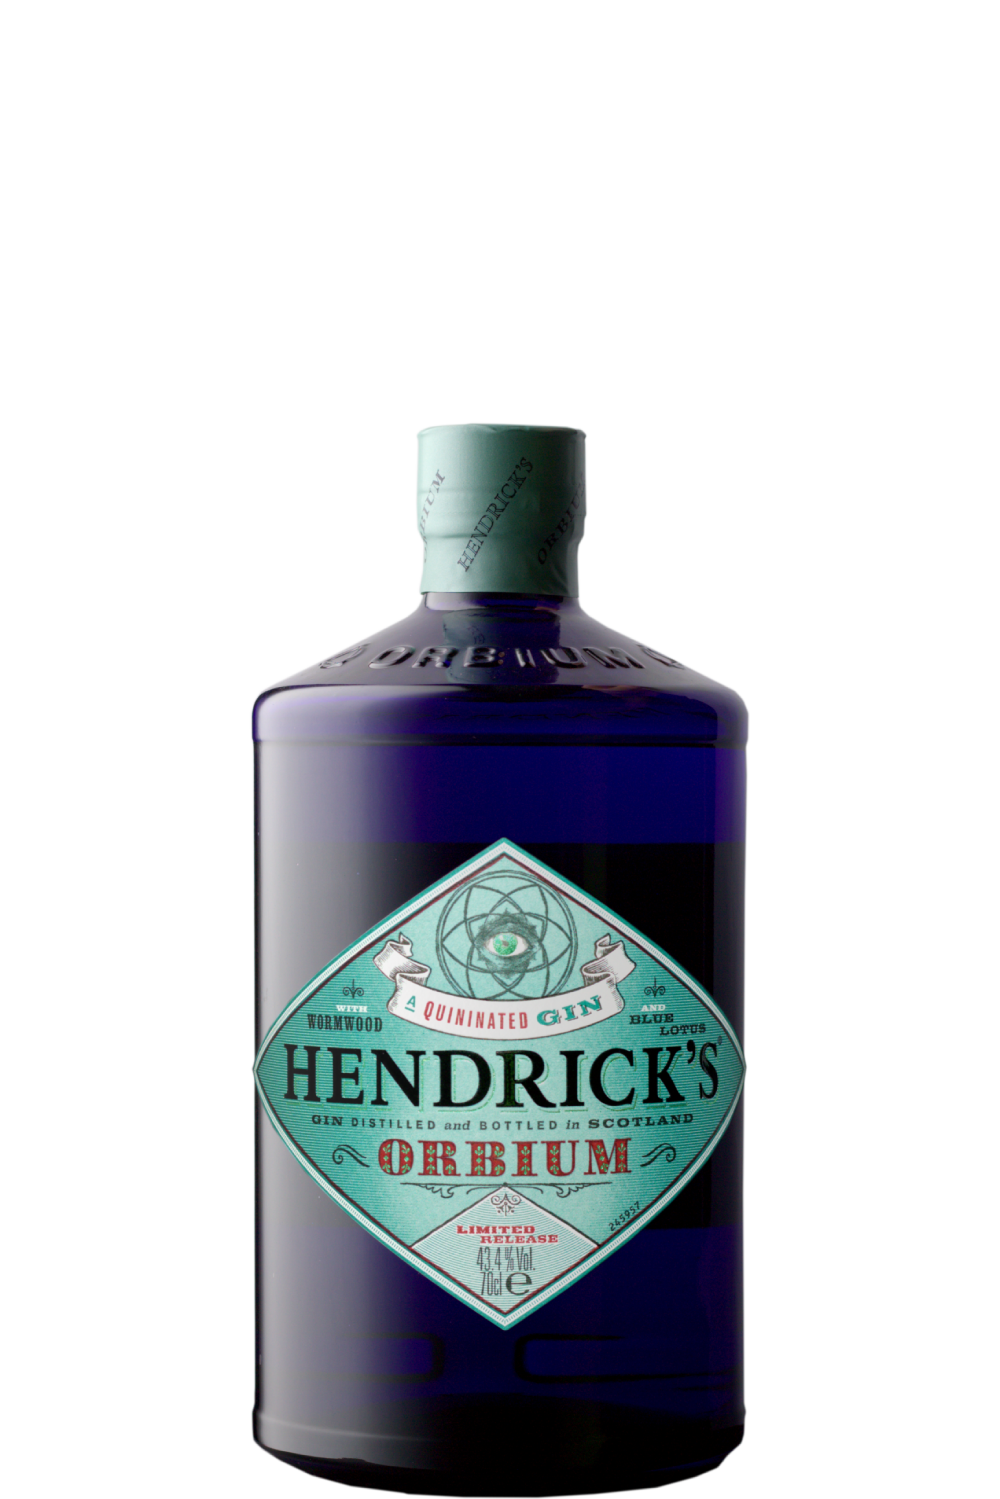 WineVins Gin Hendrick's Orbium